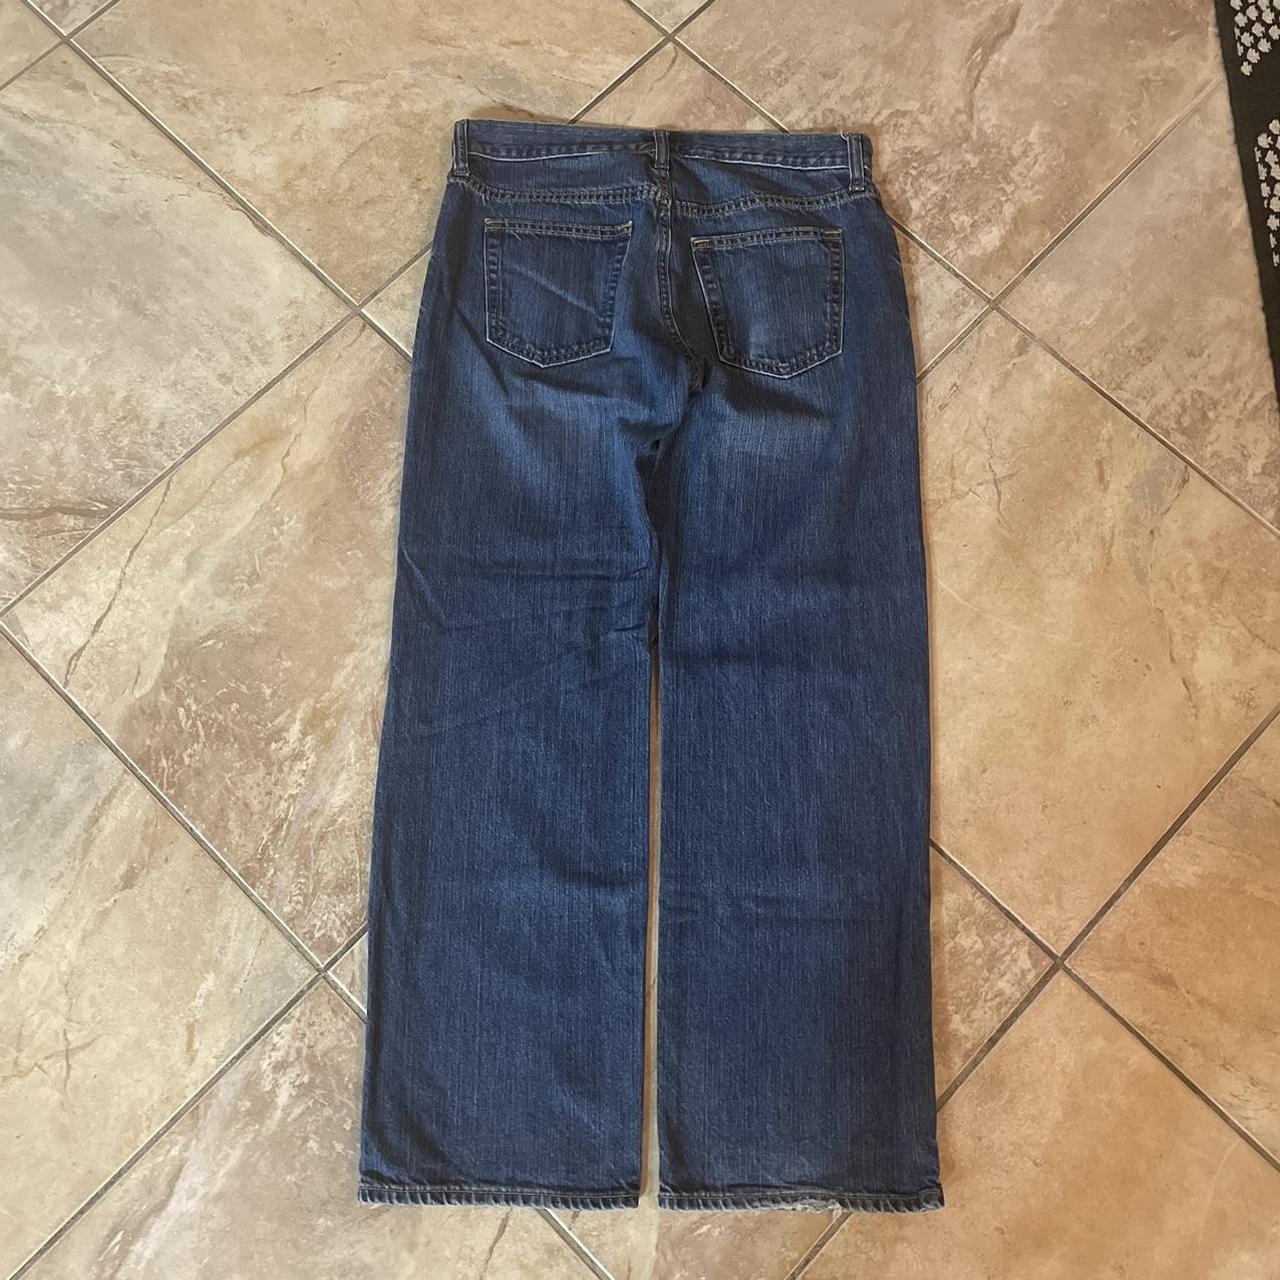 Vintage Old Navy Baggy Jeans 30x30 Looking to get... - Depop